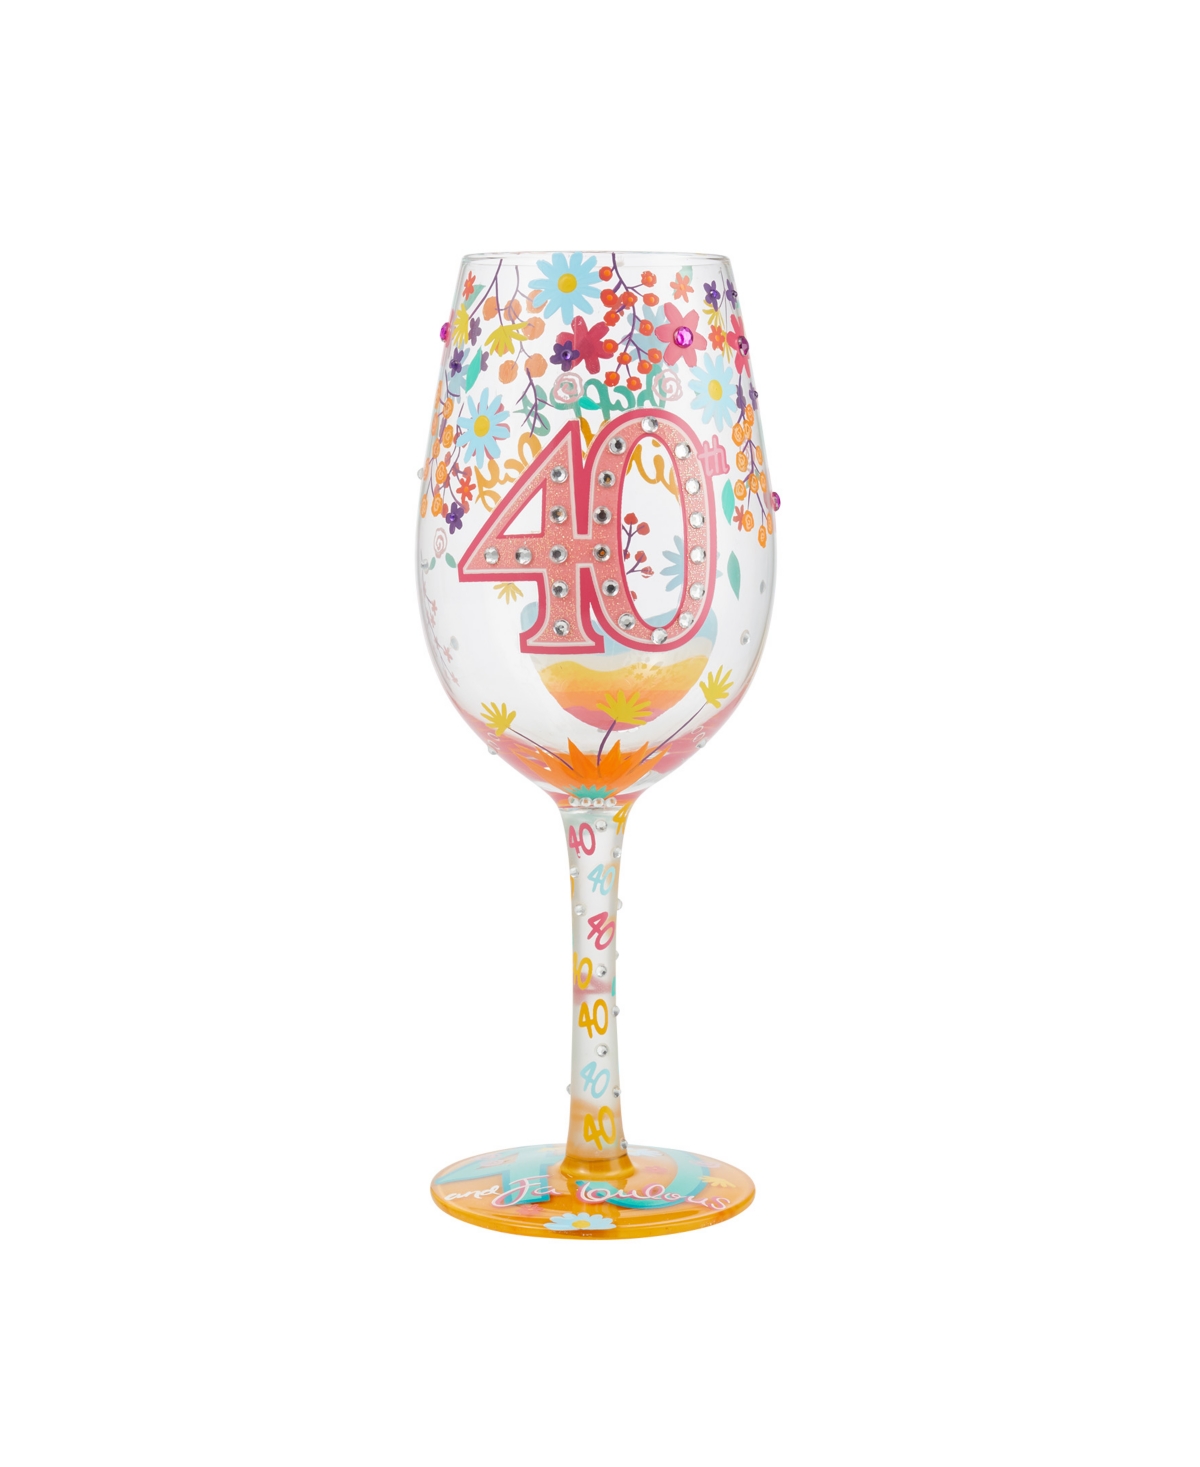 Enesco Lolita Happy 40th Birthday Wine Glass, 16 oz In Multi